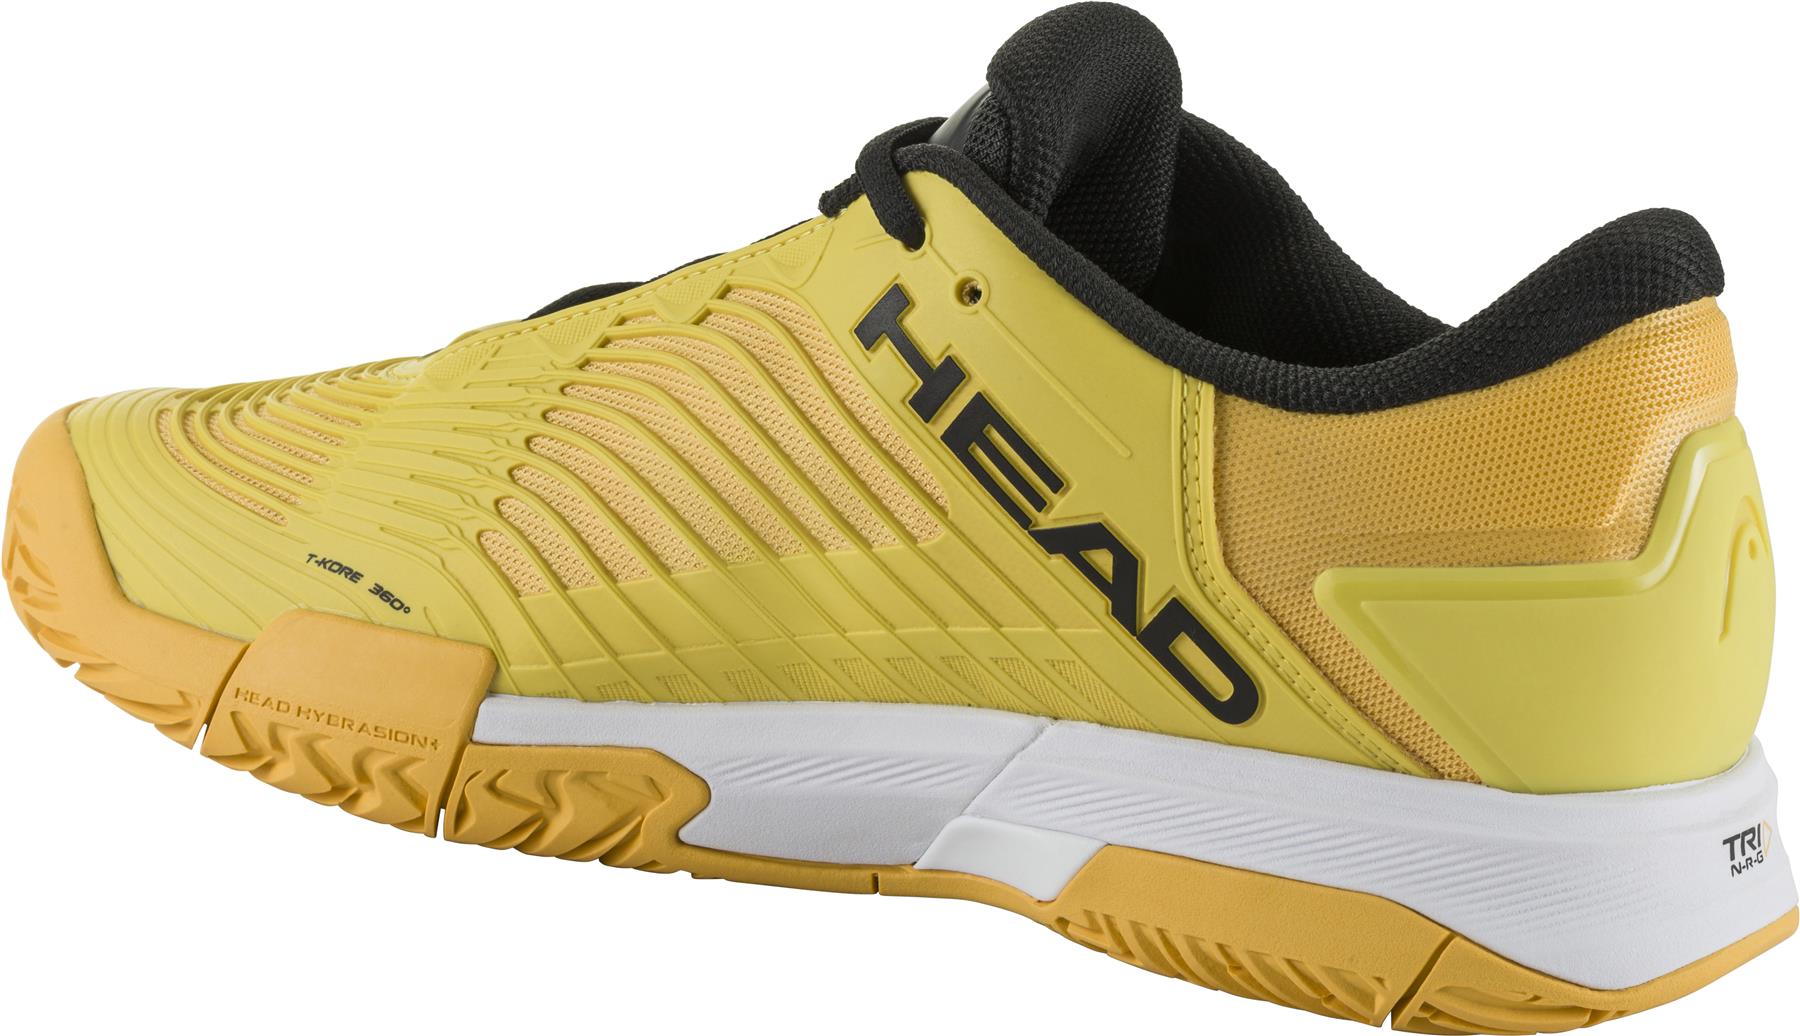 HEAD Revolt Pro 4.5 Mens Tennis Shoes - Banana / Black - Left